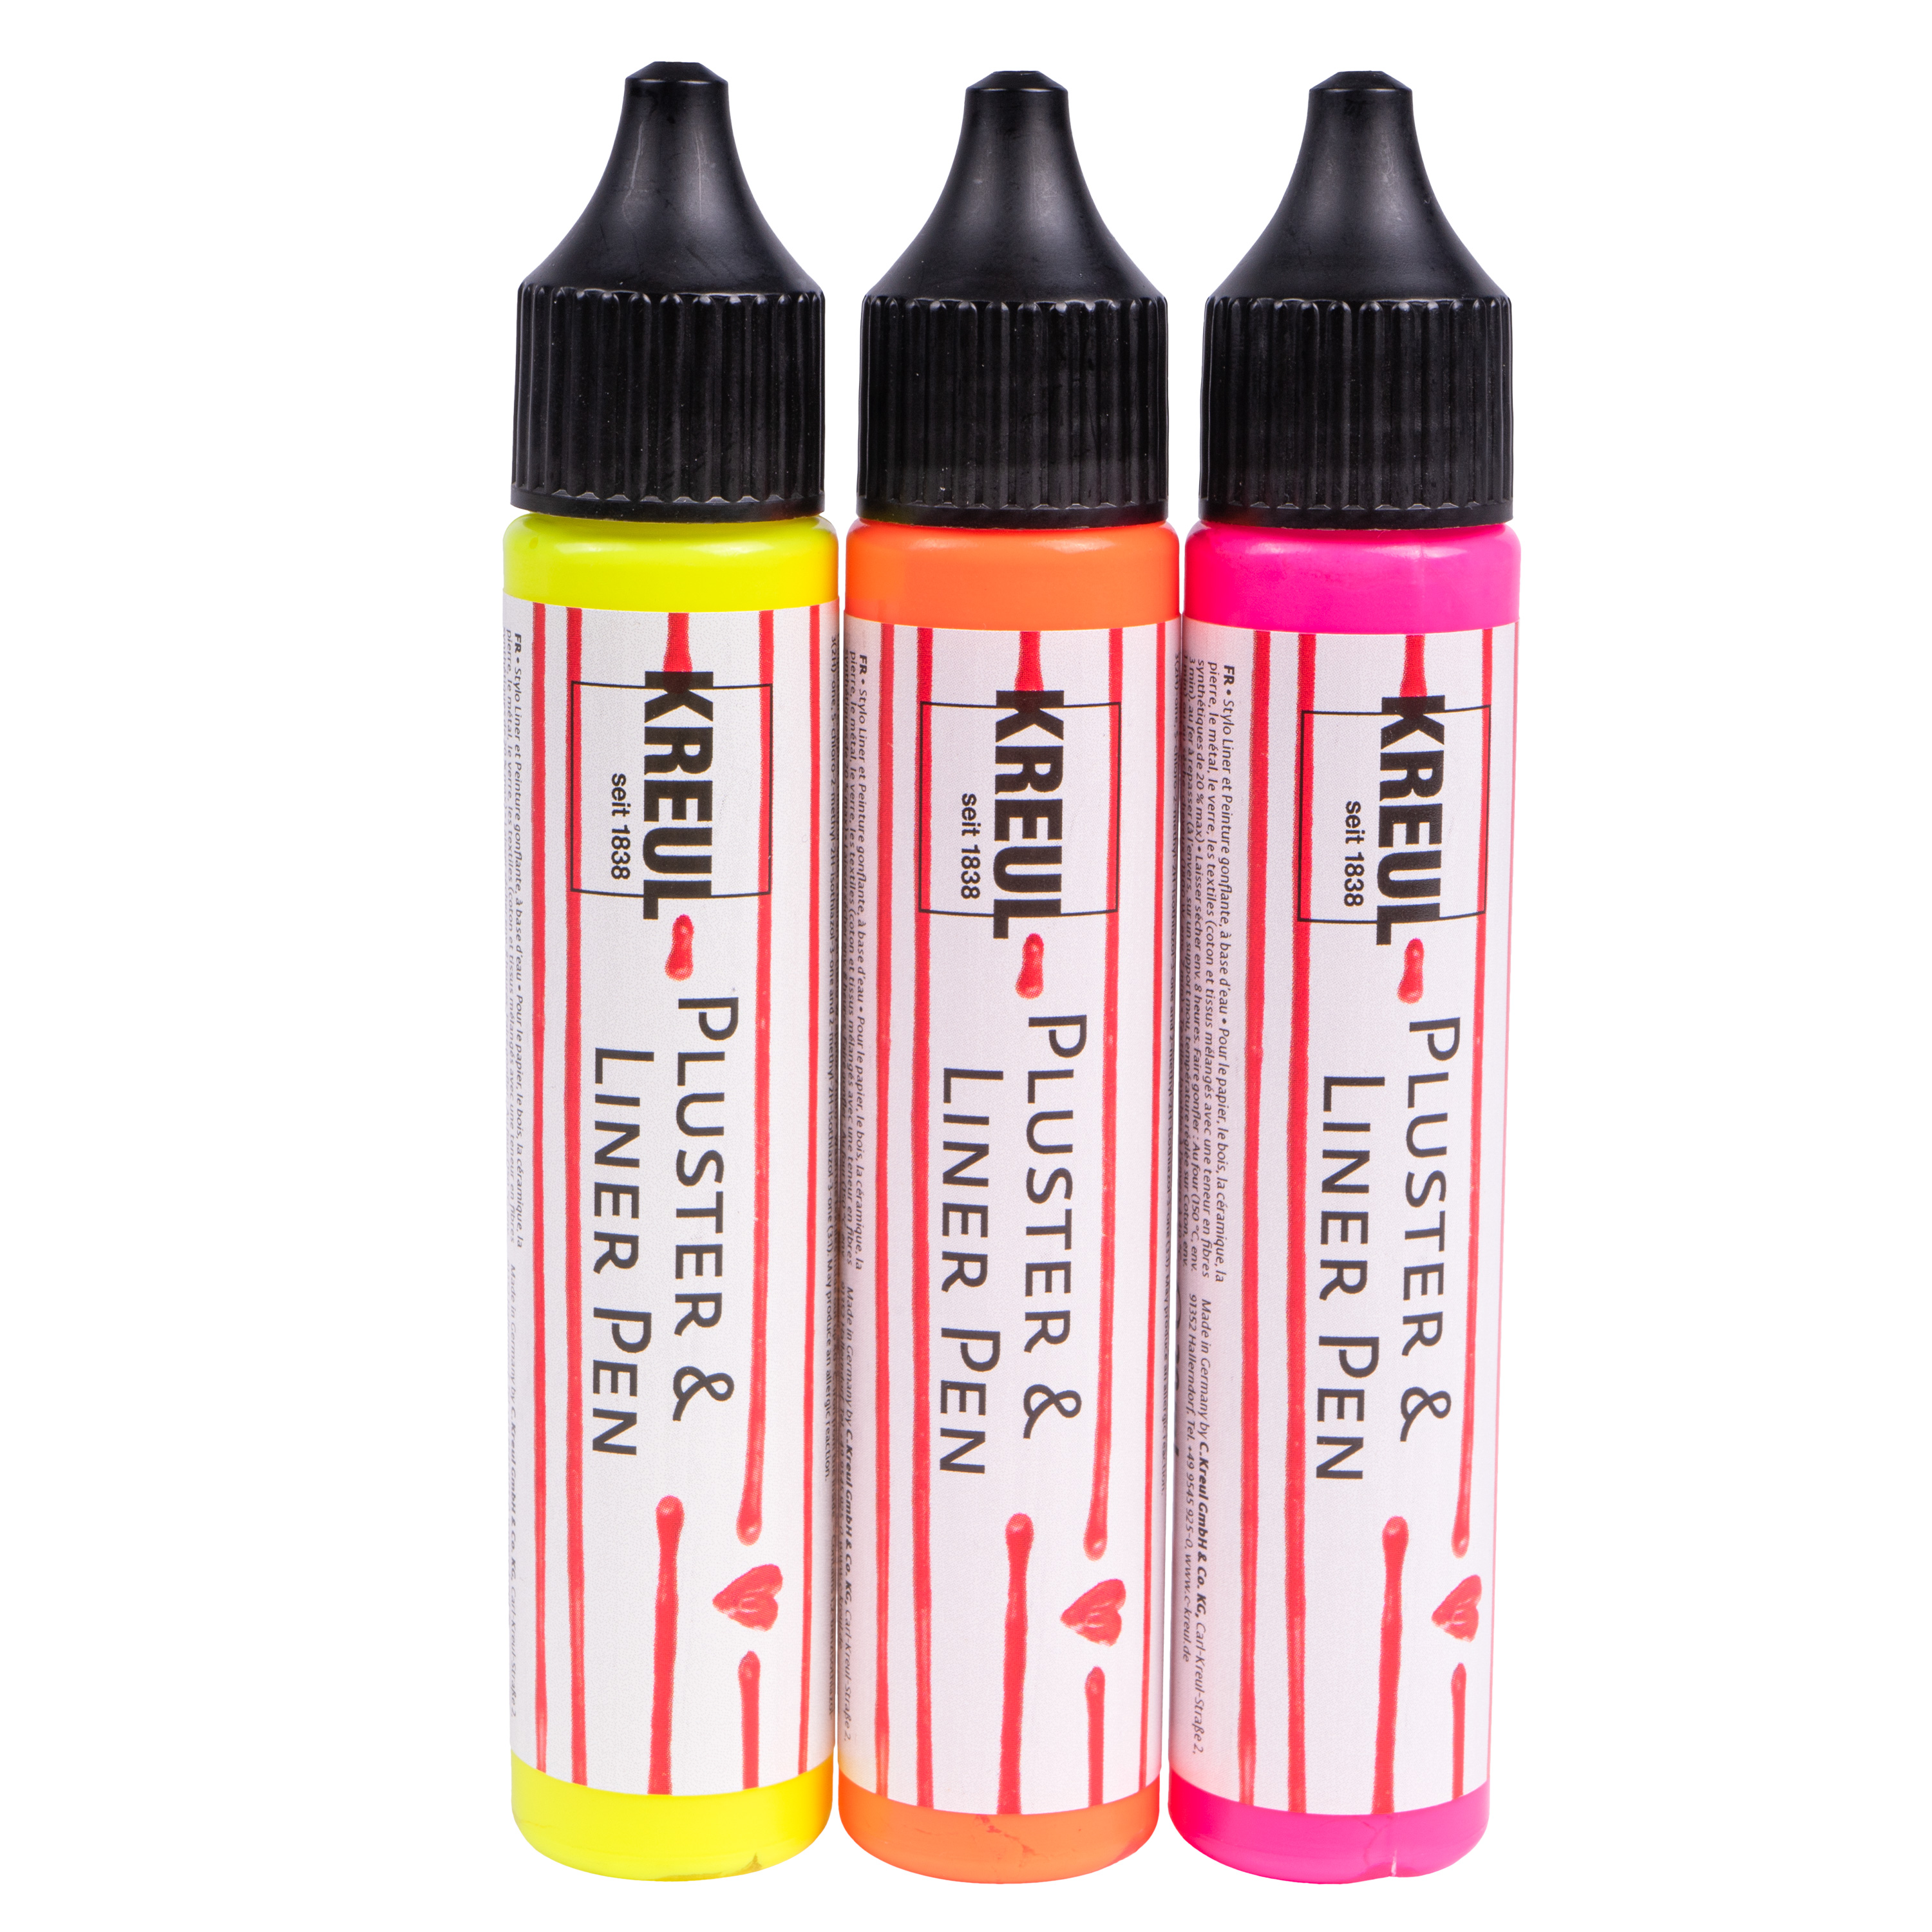 KREUL Pluster & Liner Pen, 29 ml, neonpink